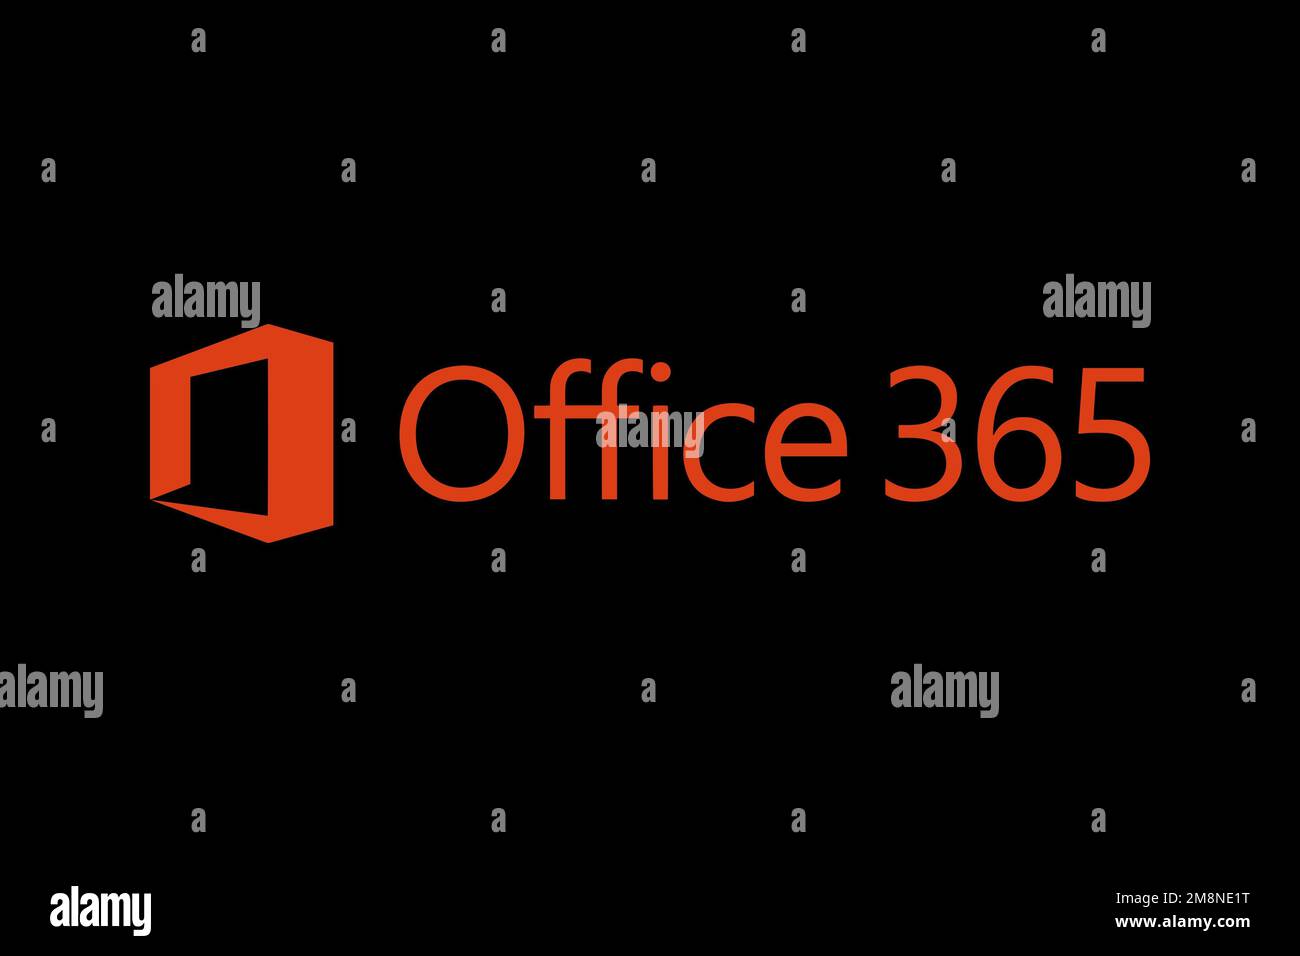 Office 365 là bộ sản phẩm phần mềm văn phòng được sử dụng rộng rãi trên toàn thế giới. Logo của Office 365 được thiết kế đơn giản và hiện đại, tượng trưng cho sự tiện ích và chuyên nghiệp. Hãy cùng xem hình ảnh liên quan đến Logo Office 365 để biết thêm về bản thân sản phẩm này.